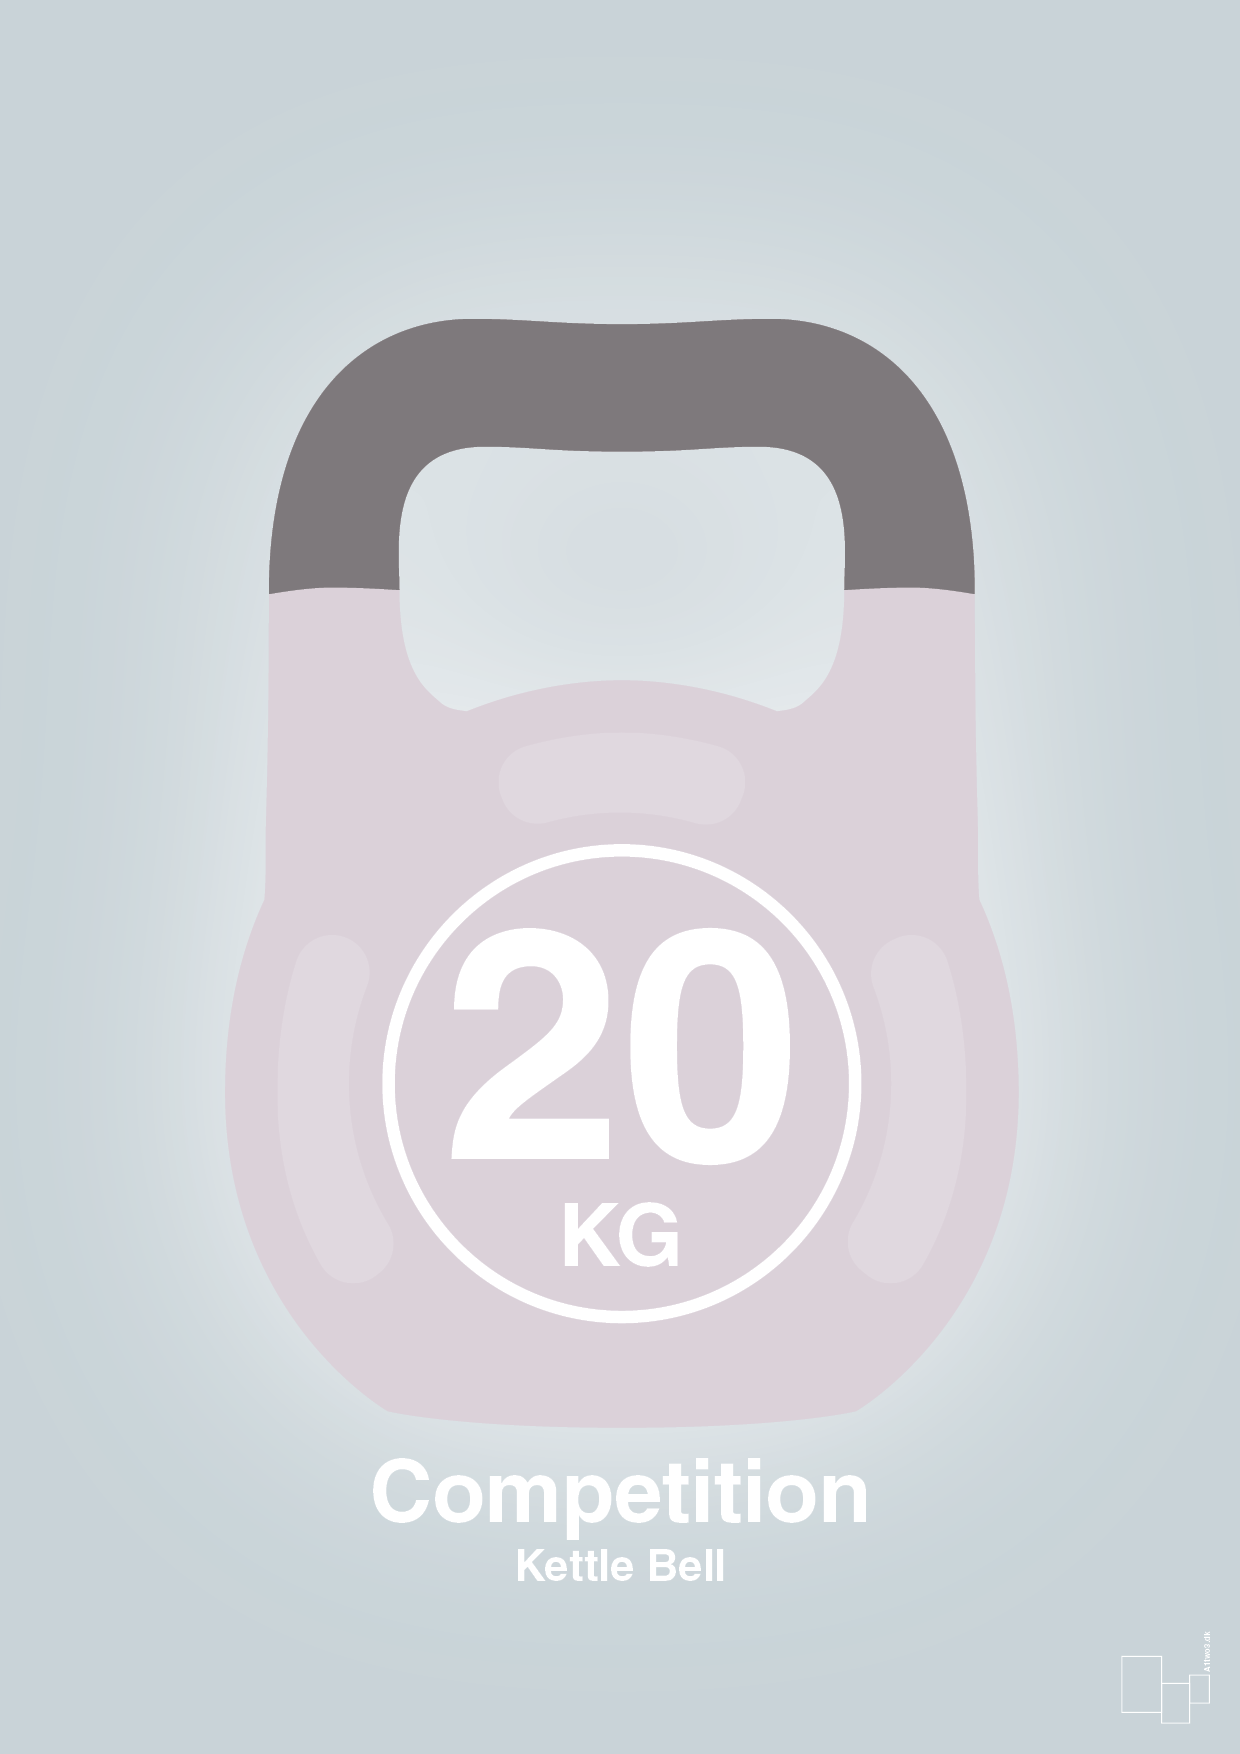 kettle bell 20 kg - competition color - Plakat med Grafik i Light Drizzle